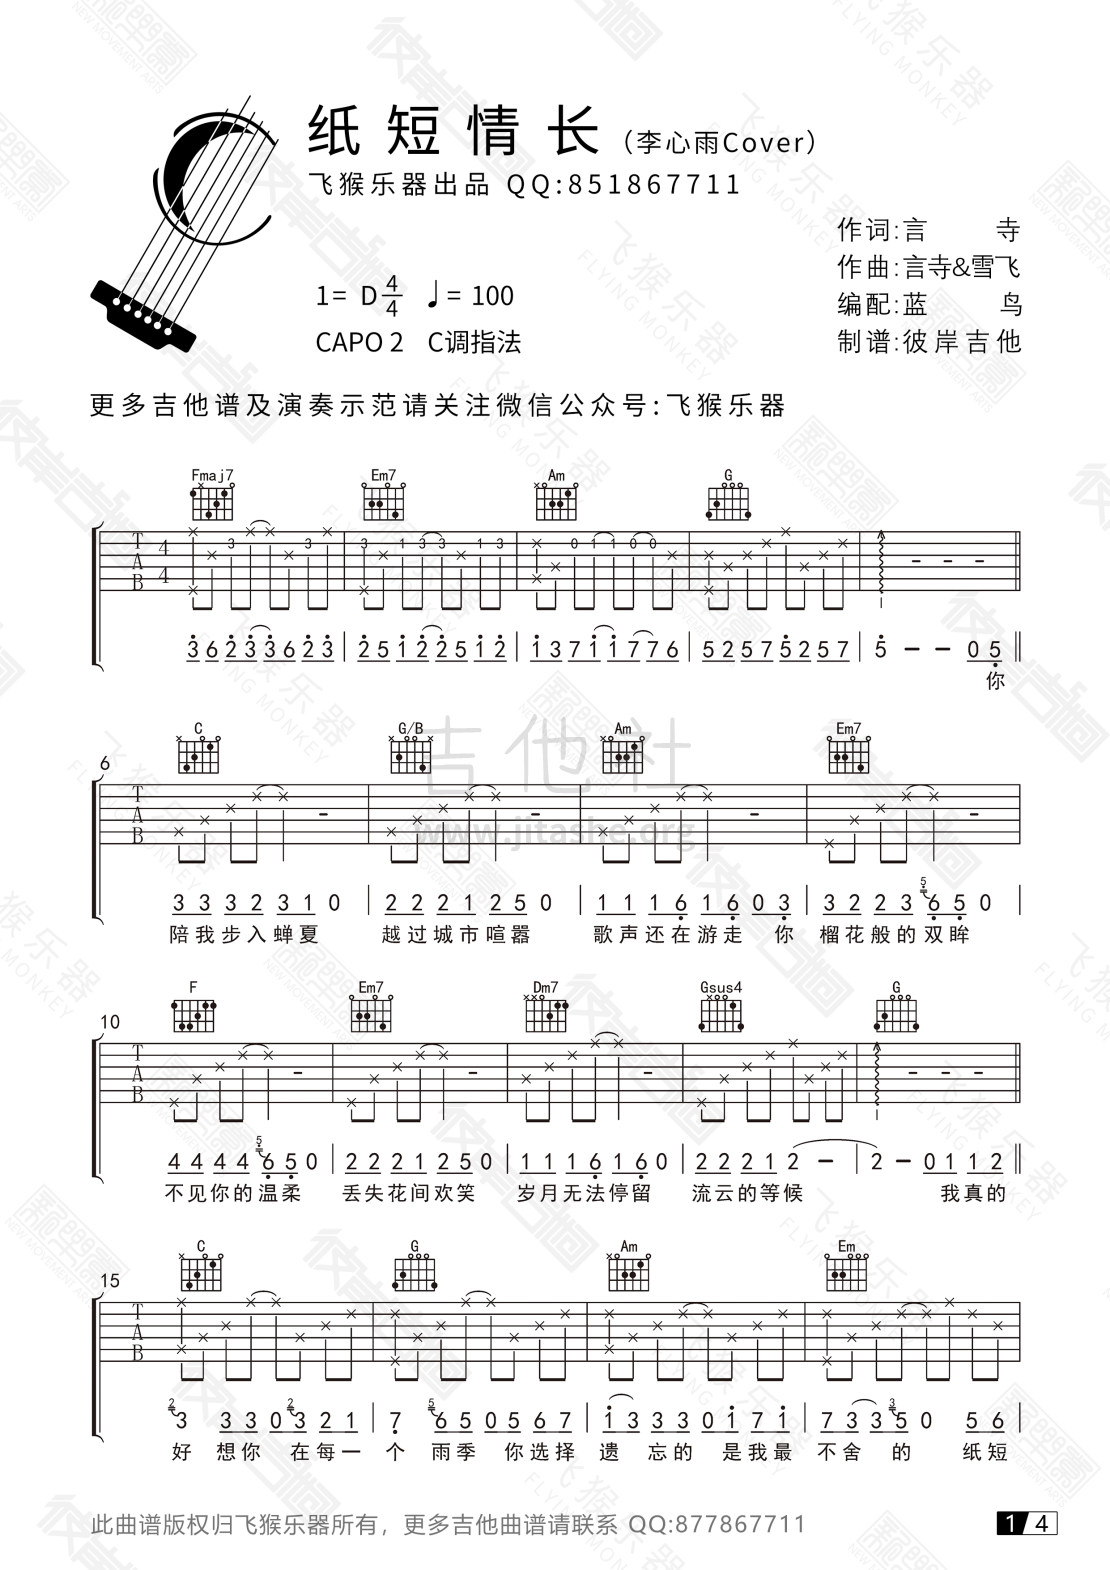 打印:纸短情长(飞猴乐器版)吉他谱_烟把儿乐队_纸短情长吉他谱01.jpg